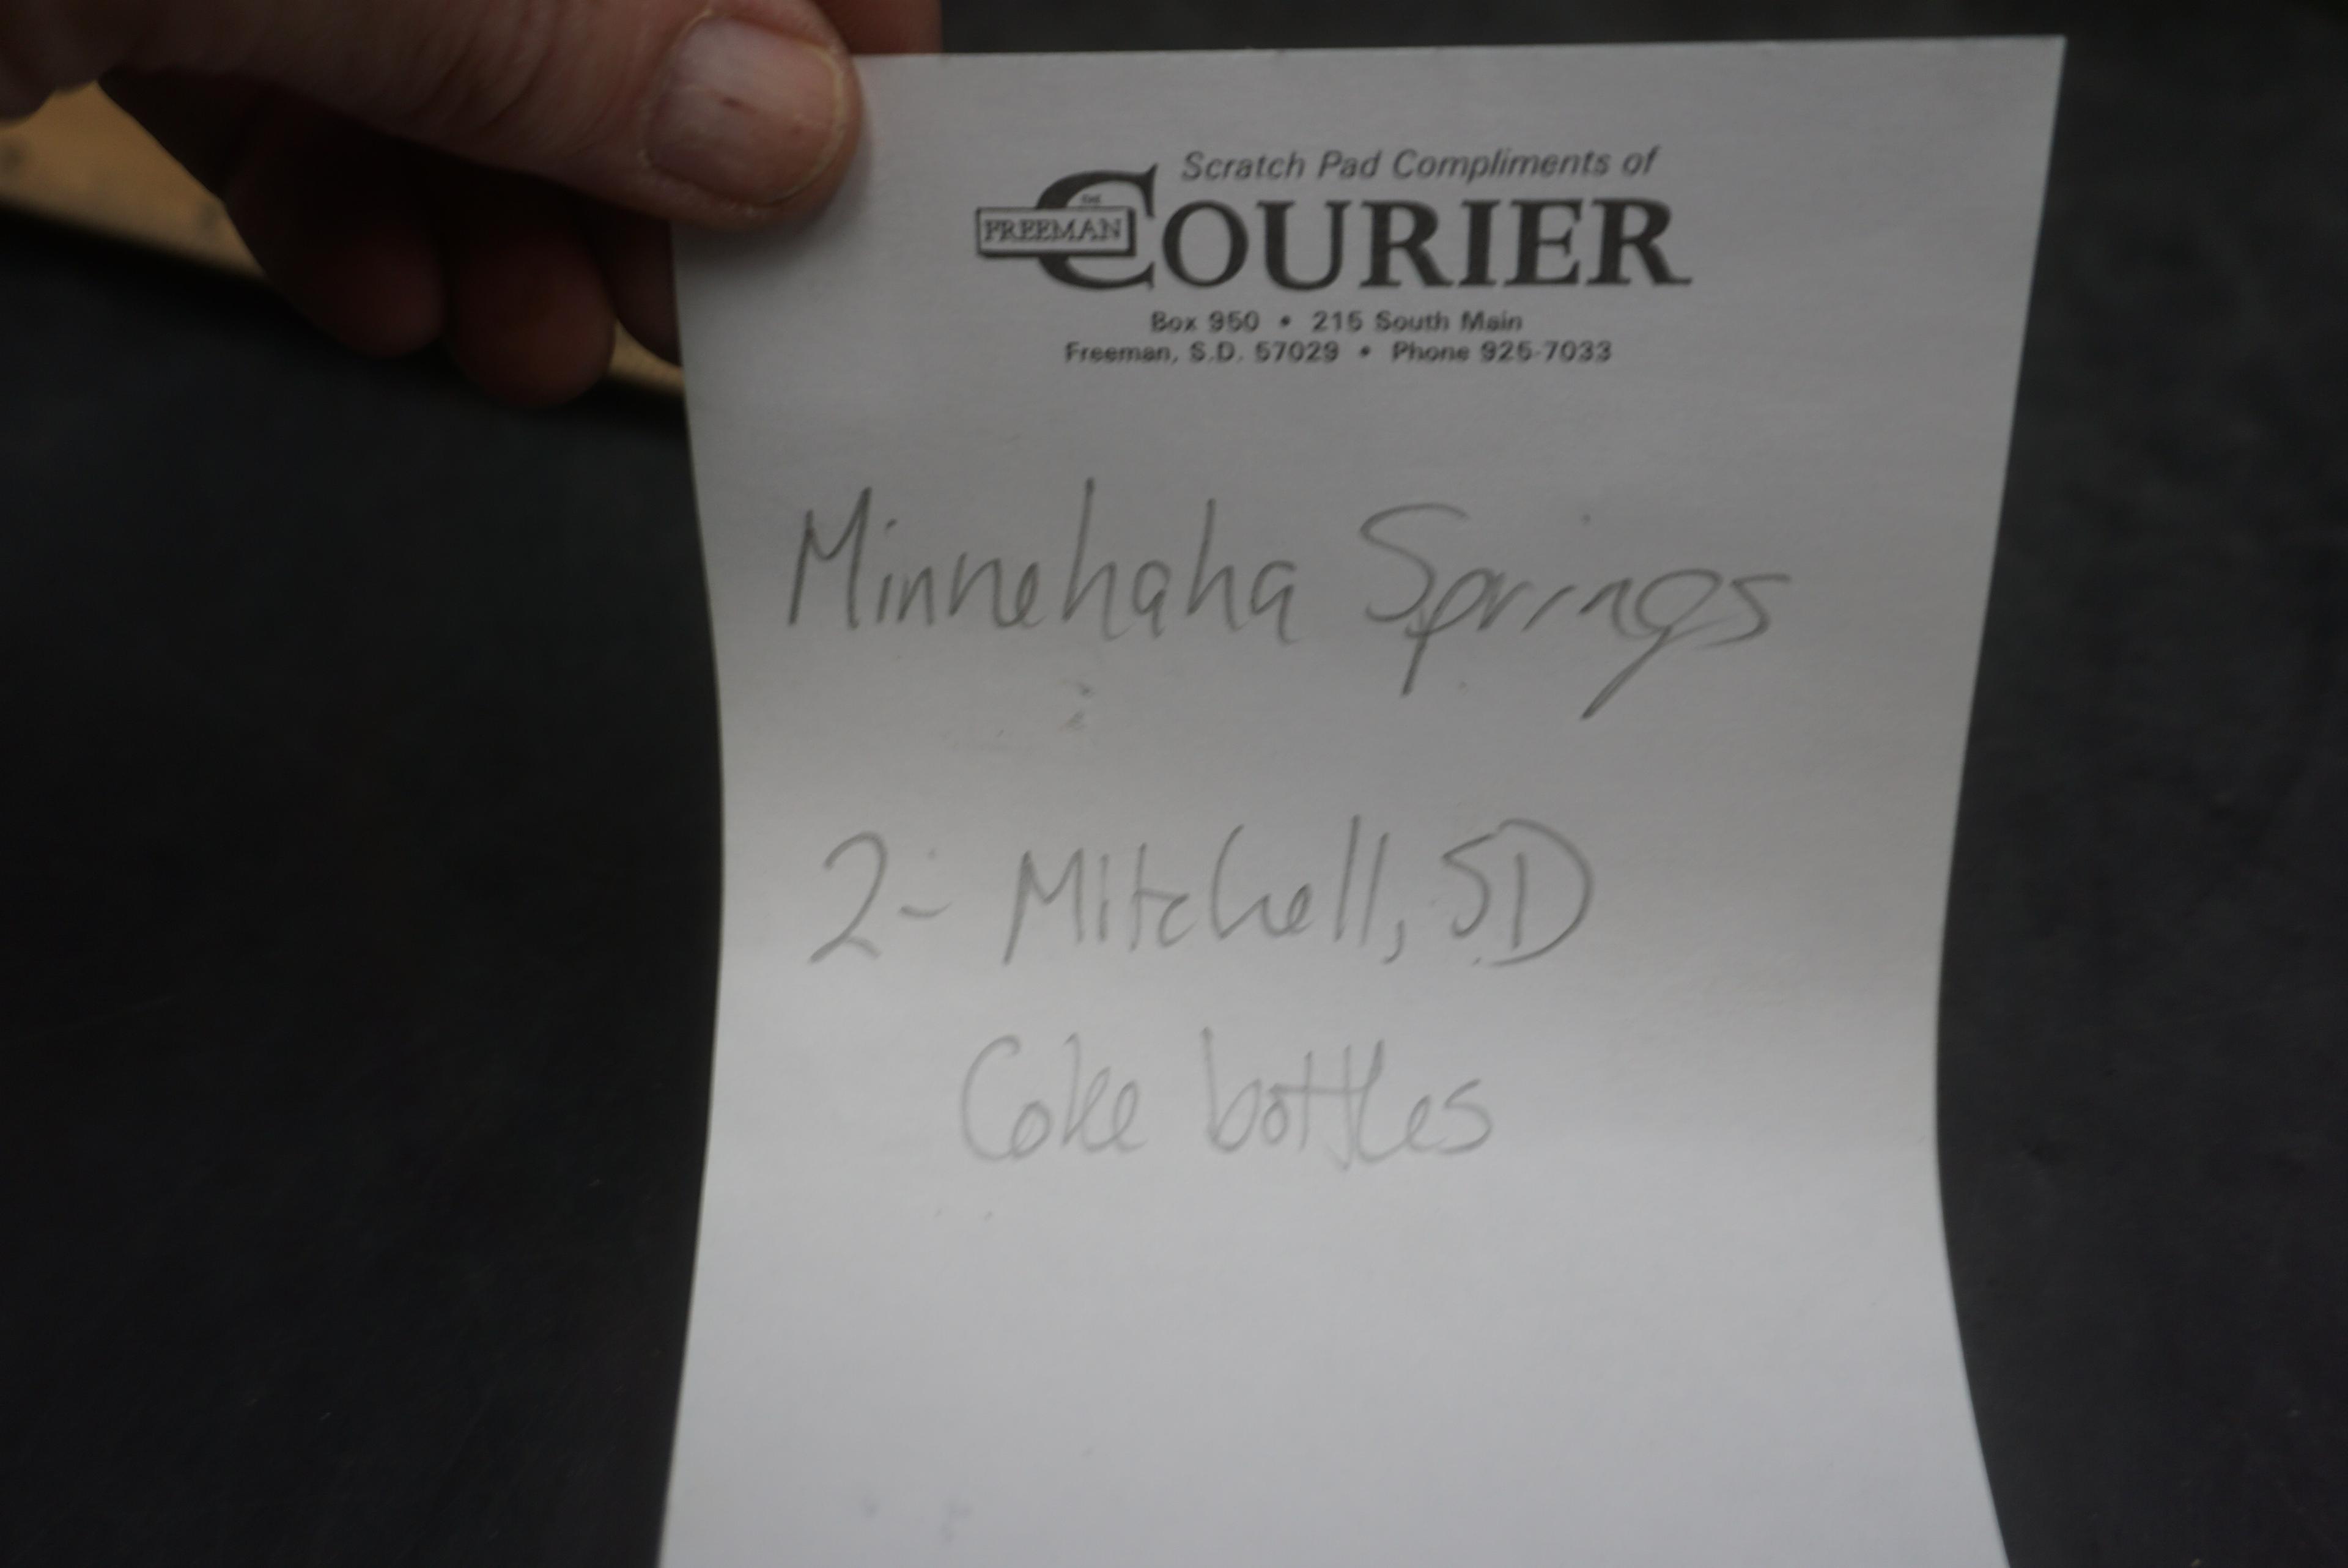 Minnehaha Springs & 2 Mitchell, S.D. Coke Bottles